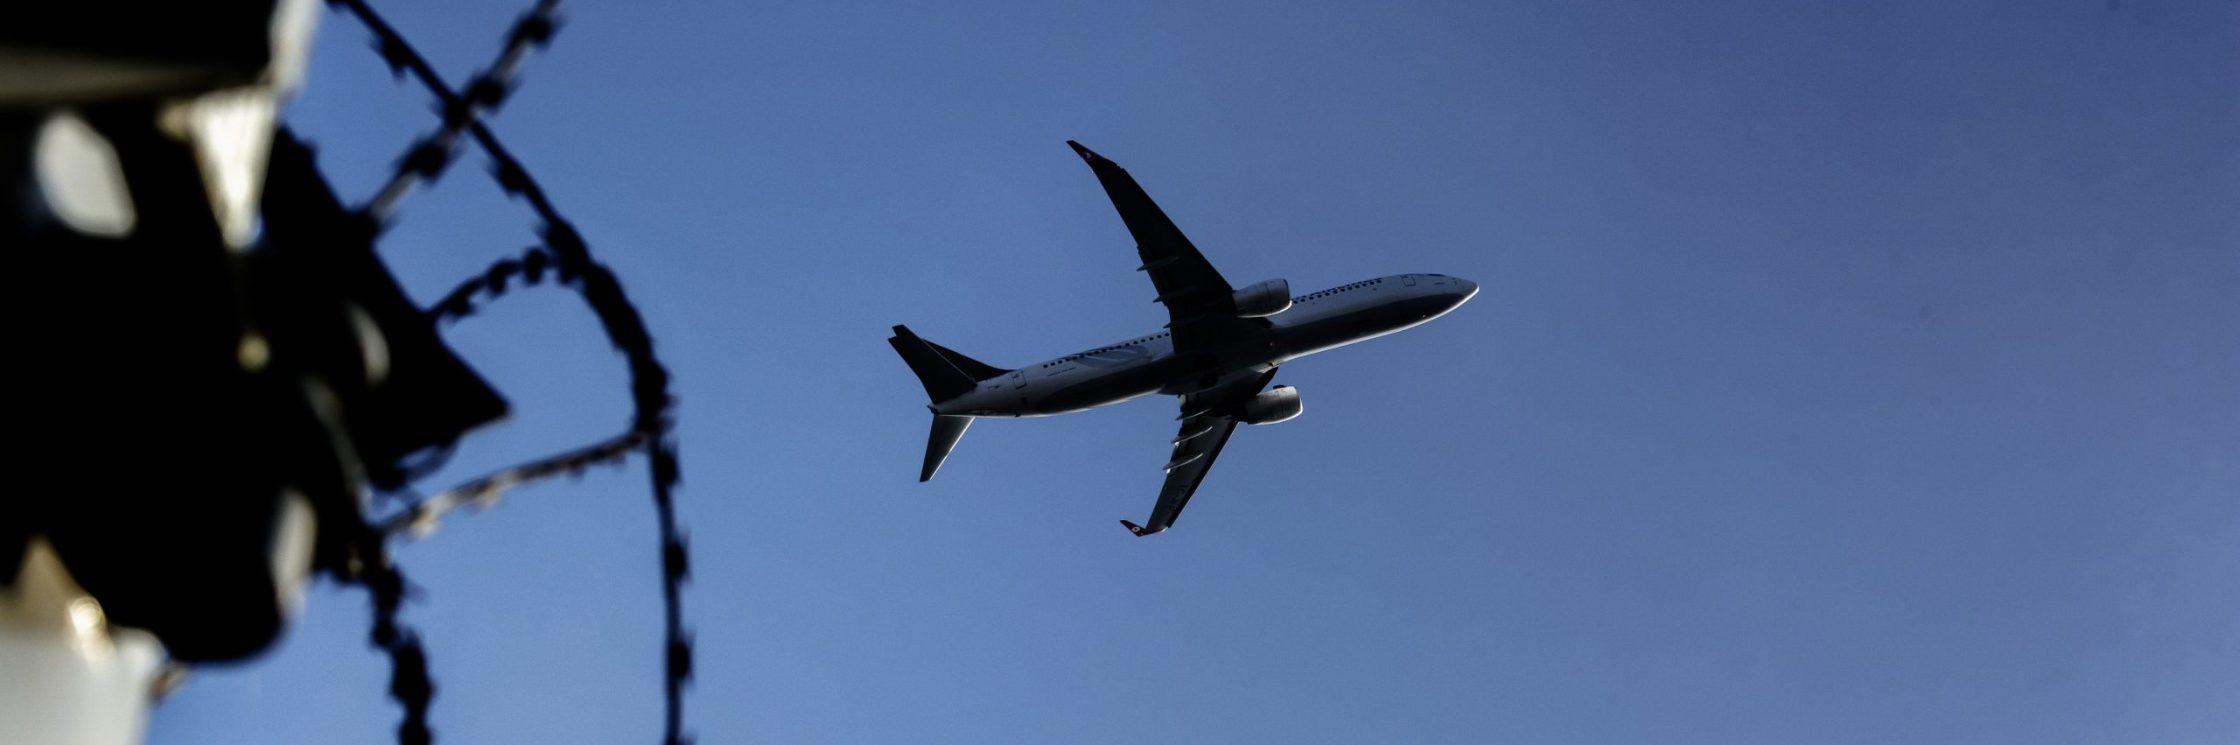 Ein Flugzeug fliegt über Stacheldraht vor blauem Himmel